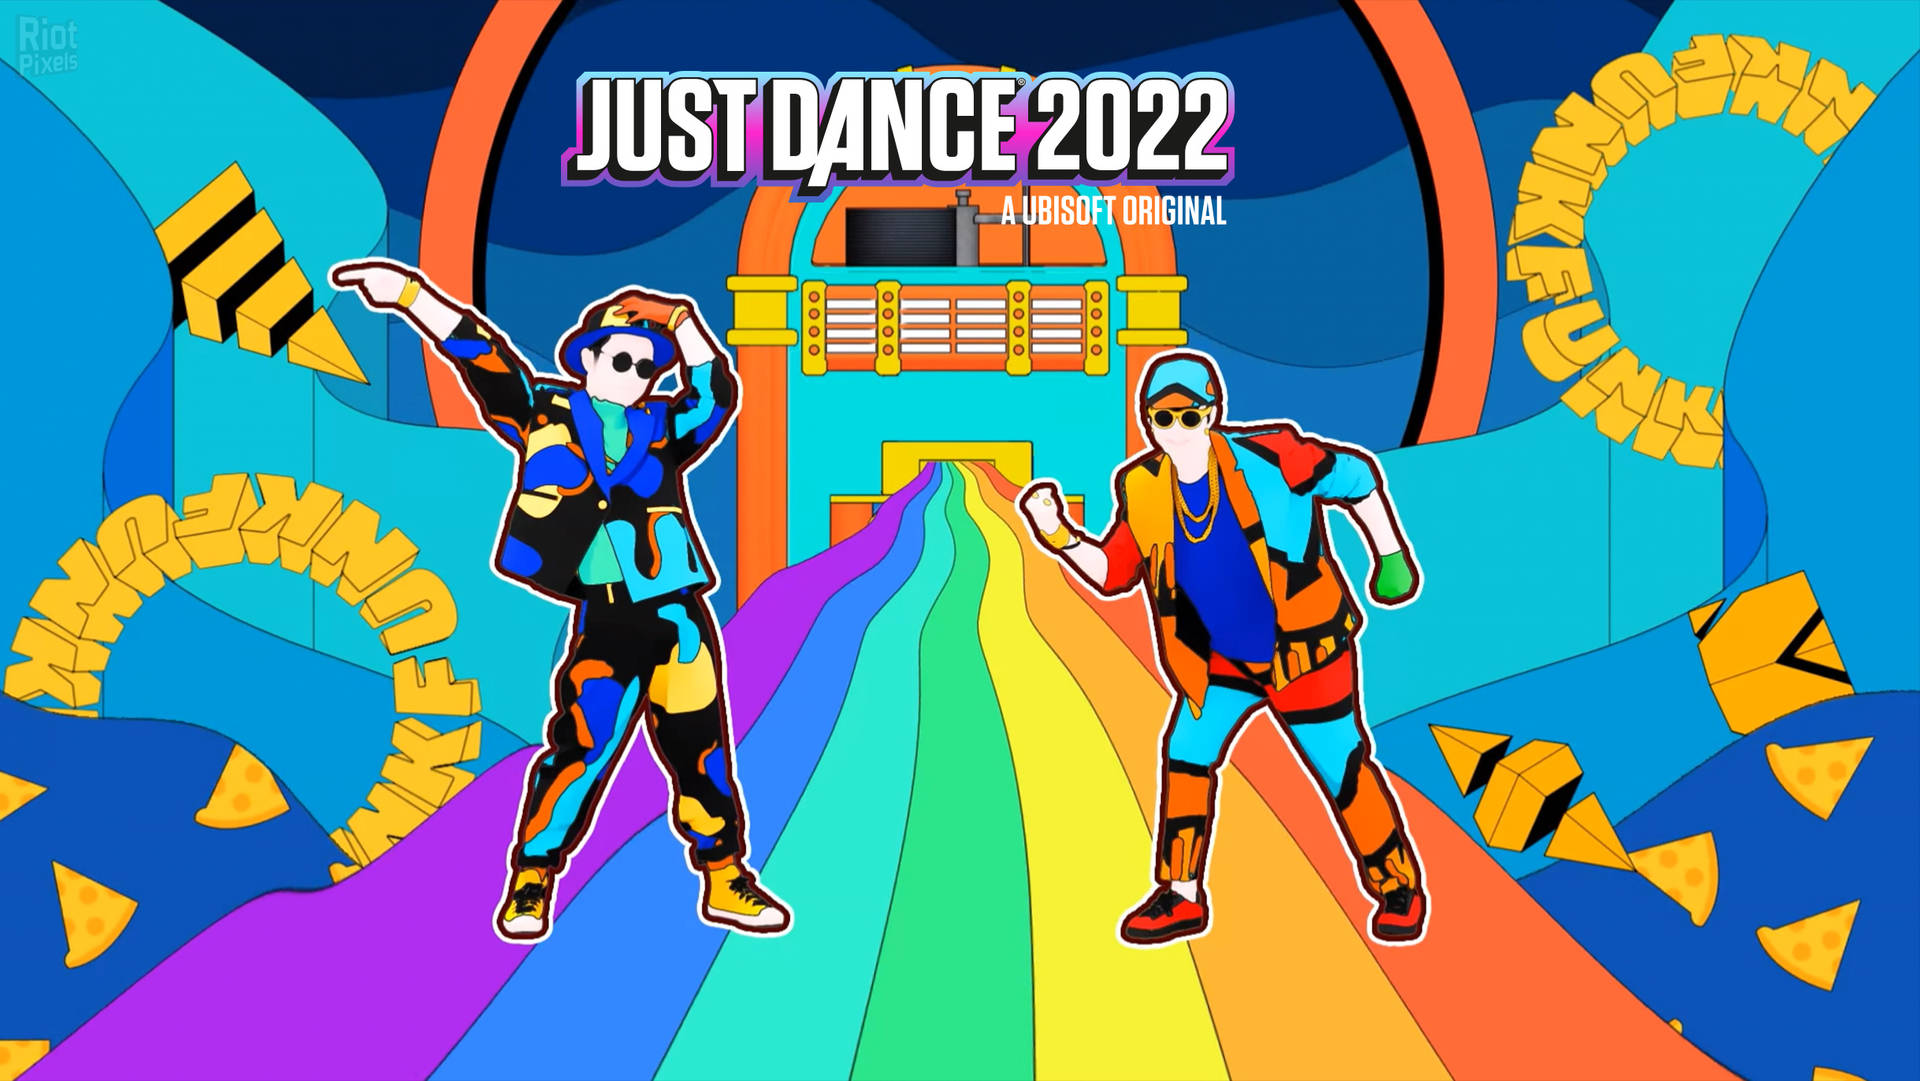 Fundode Tela De Dançarinos De Just Dance 2022 Sobre Um Arco-íris. Papel de Parede